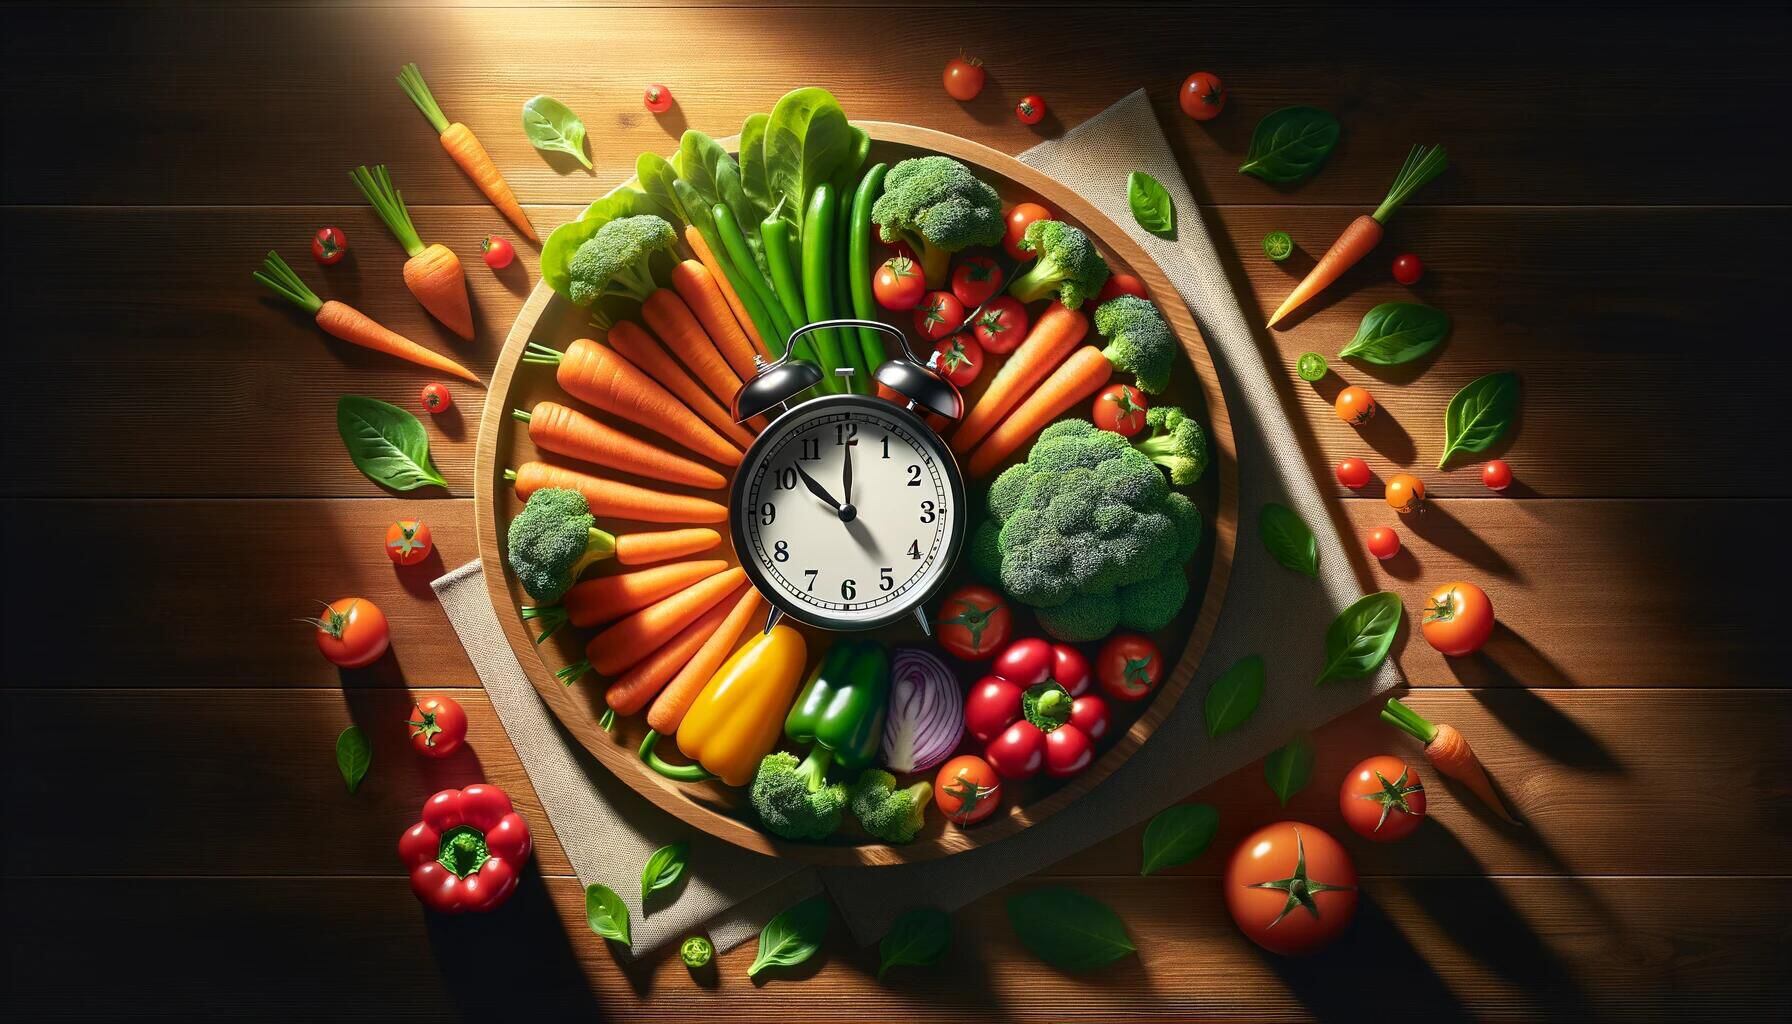 Imagen que ilustra la diversidad alimentaria de la dieta intermitente, promoviendo la salud con opciones nutritivas como vegetales, frutas, carne y pescado. (Imagen Ilustrativa Infobae)